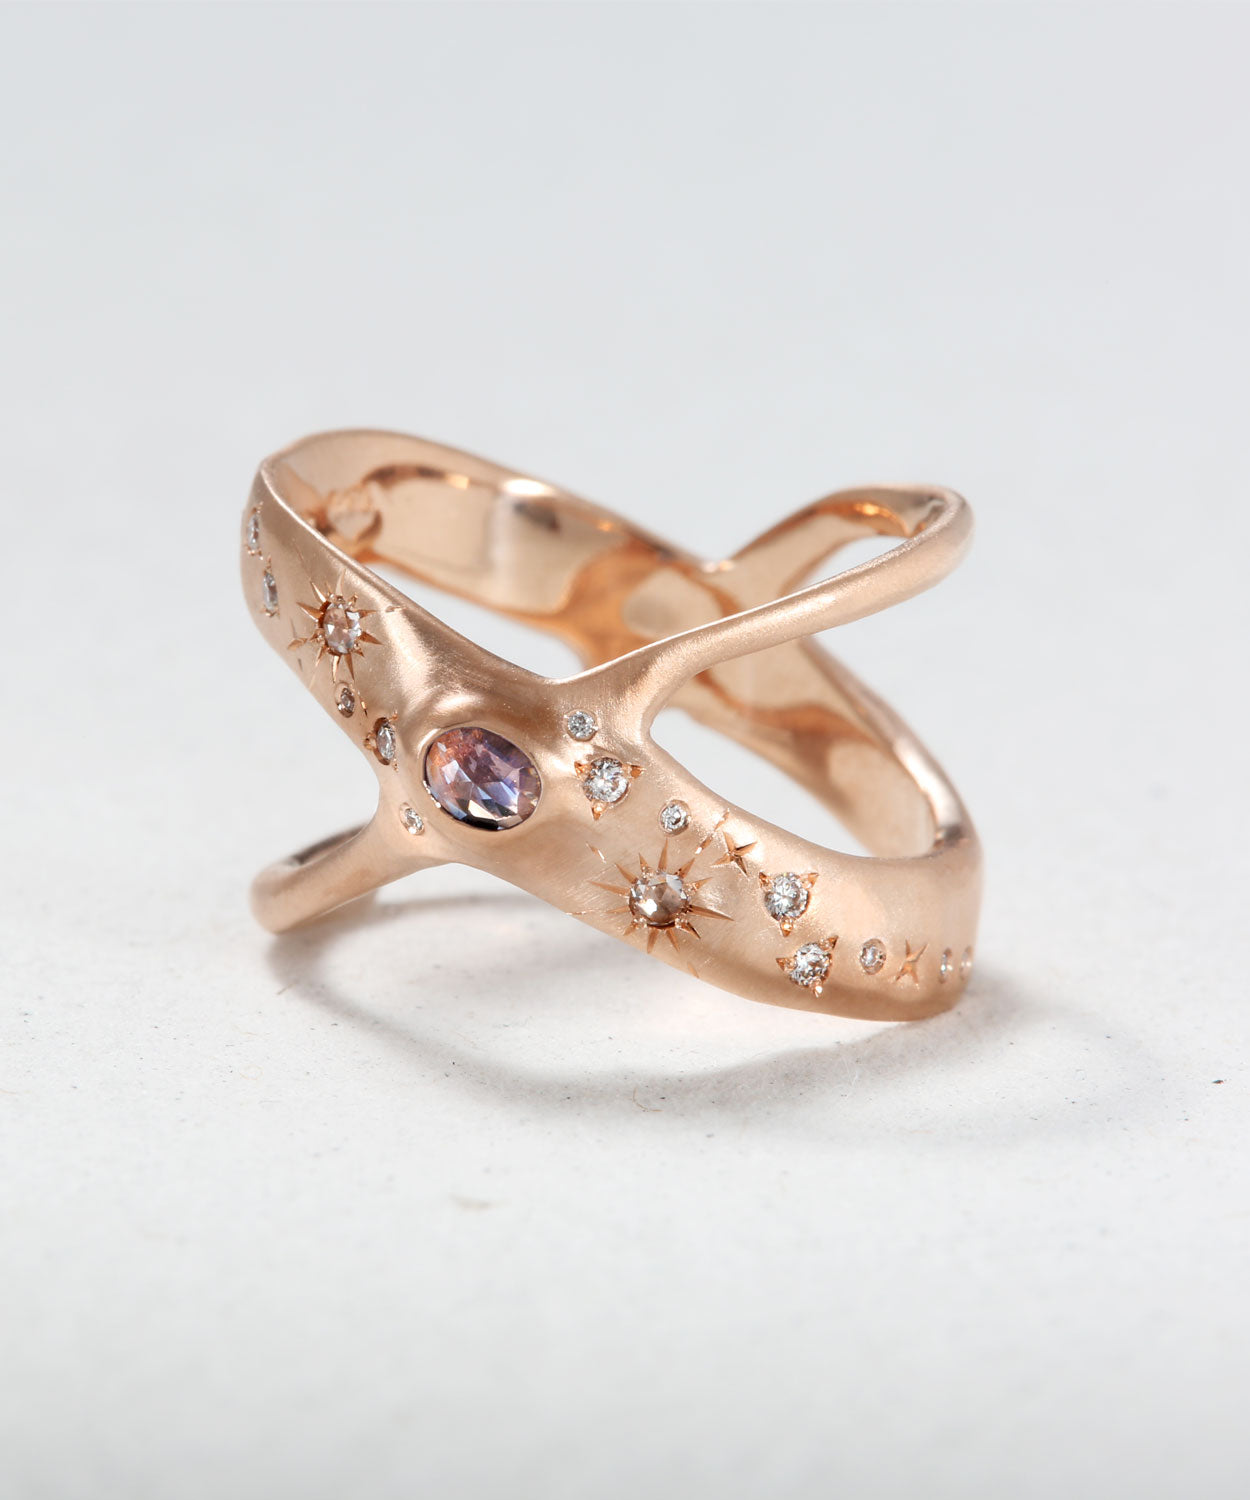 The Milky Way Ring – Sirciam Jewelry